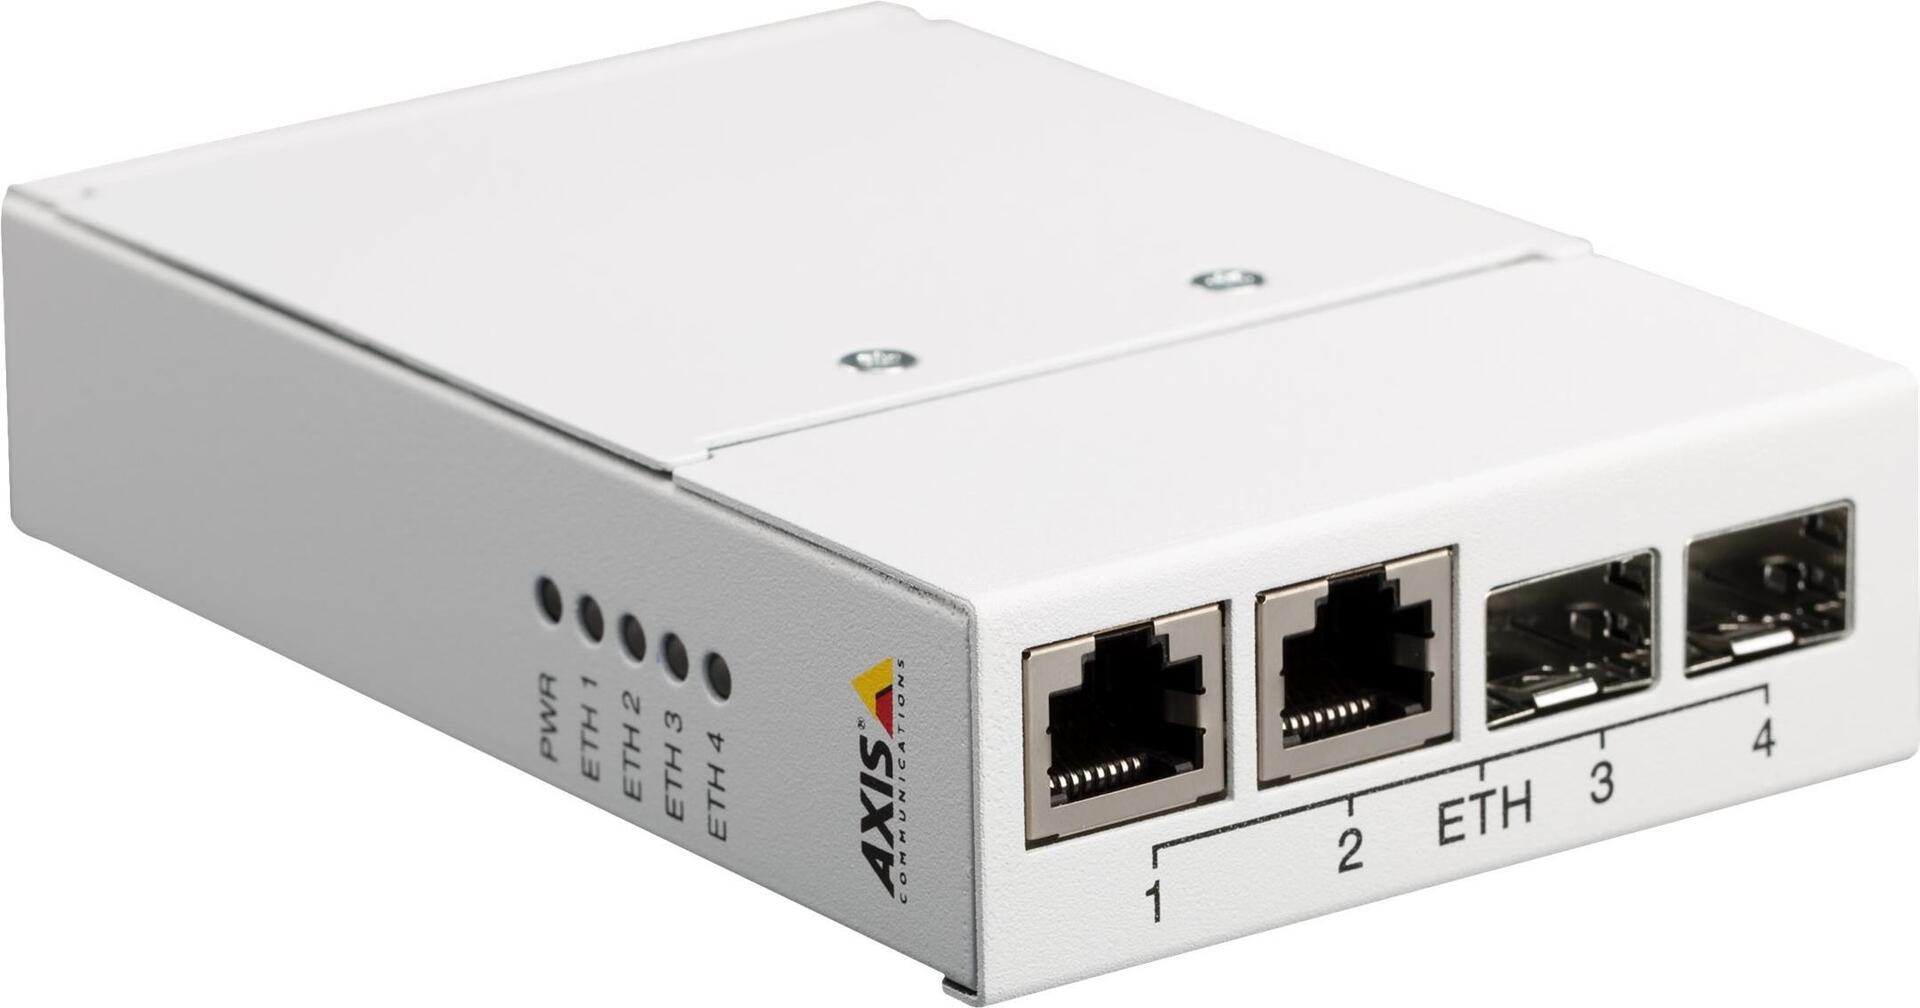 AXIS T8606 Media Converter Switch - Medienkonverter - 100Mb LAN - 10Base-T, 100Base-TX - 2 Anschlüsse - 2 x RJ-45 / 2 x SFP (mini-GBIC) - für AXIS P1455-LE, P1455-LE-3 License Plate Verifier Kit, P3818-PVE, Q6100-E 50 Hz